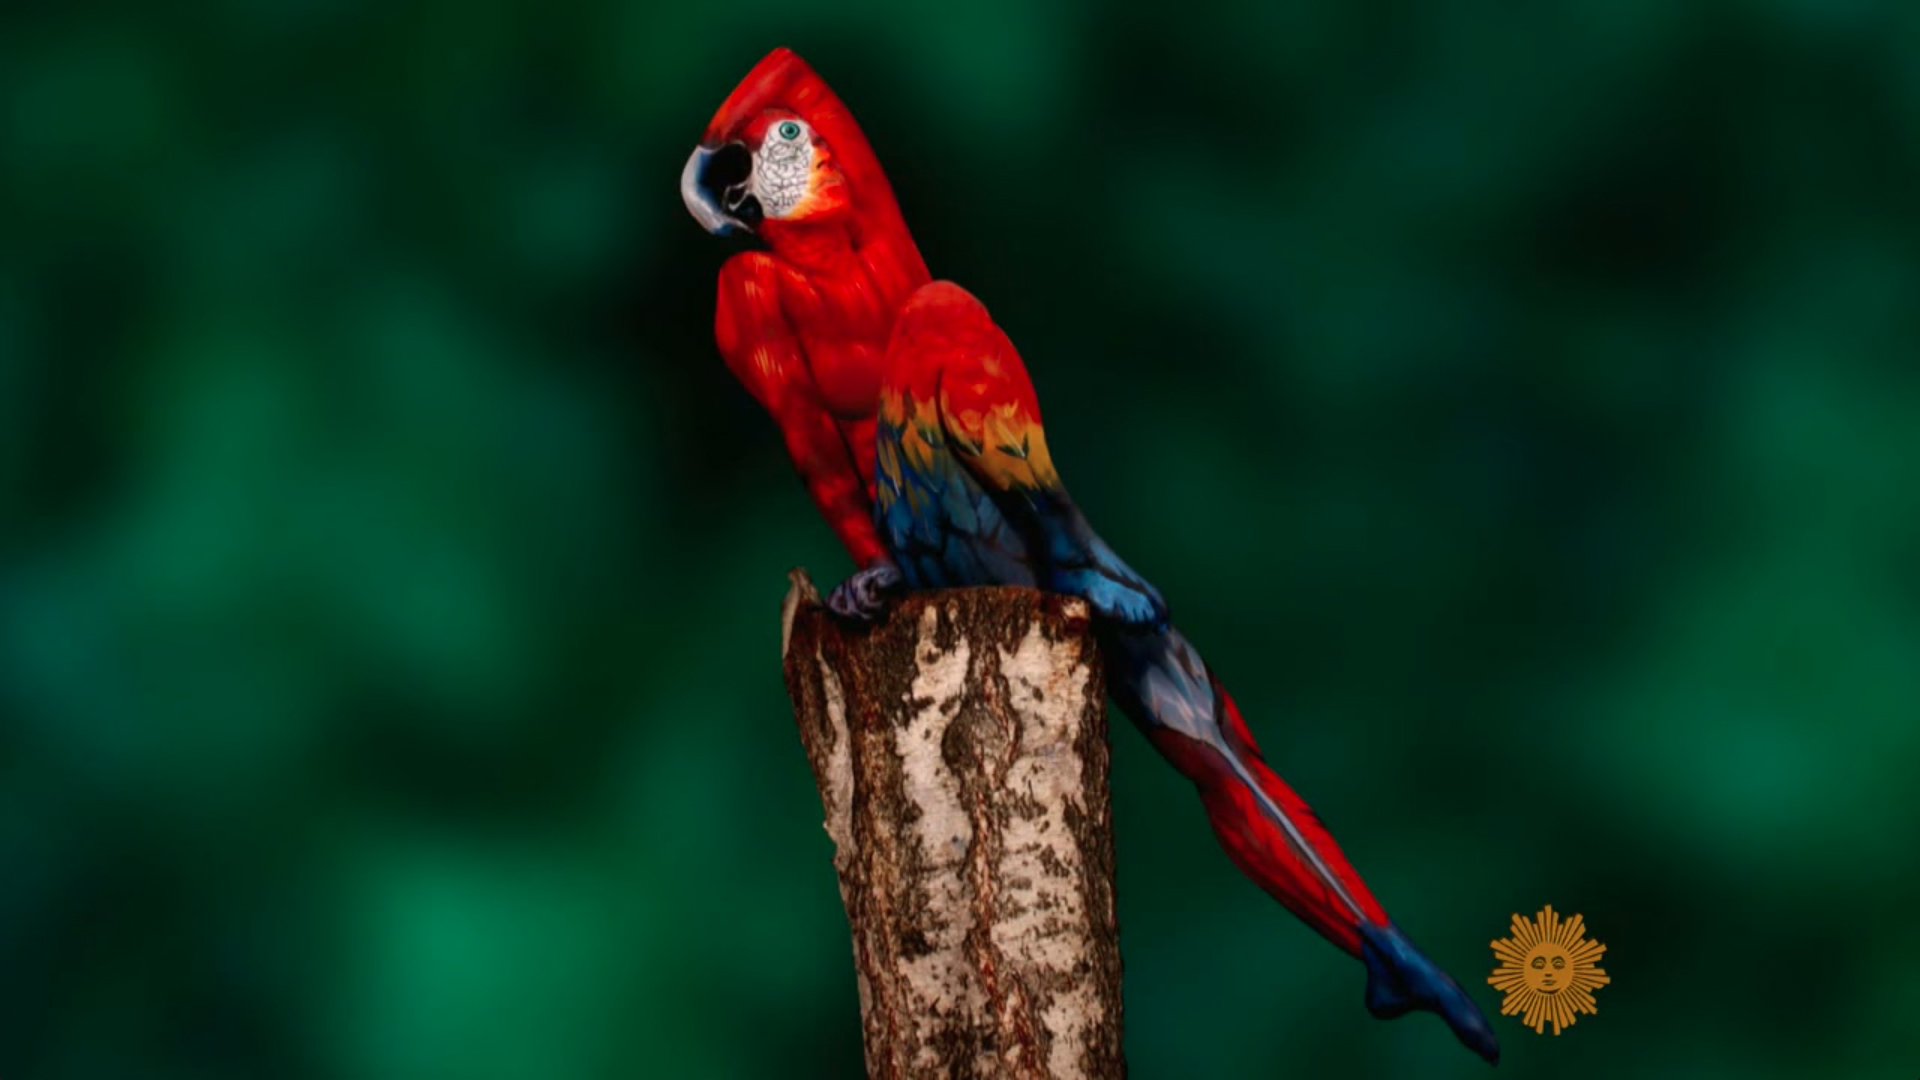 body paint artist Johannes Stötter - Stotter - parrot